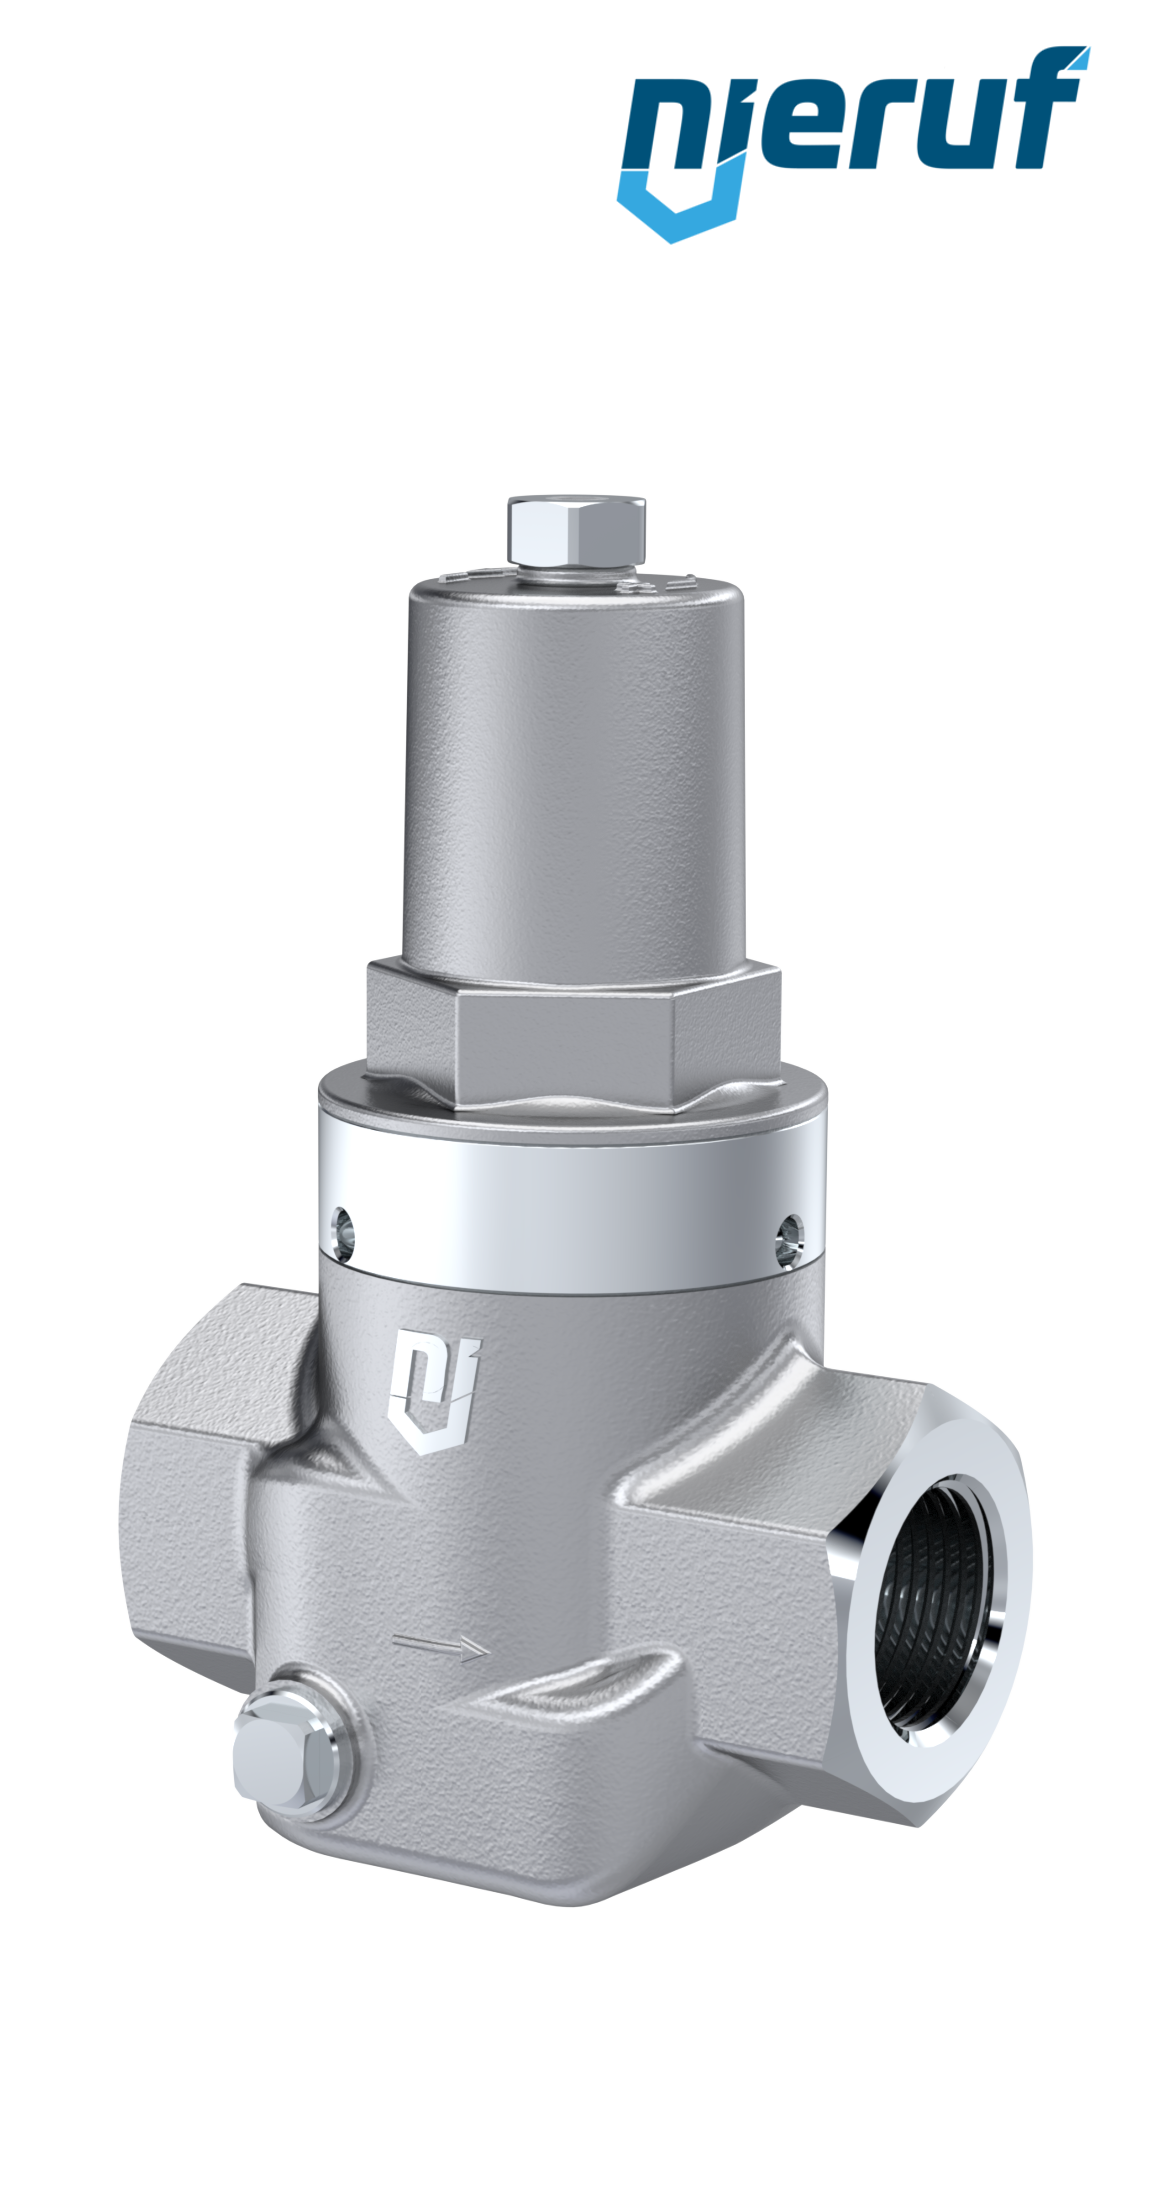 Piston-pressure reducing valve 3/4" Inch NPT DM10 stainless steel FPM / FKM 2.0 - 20.0 bar